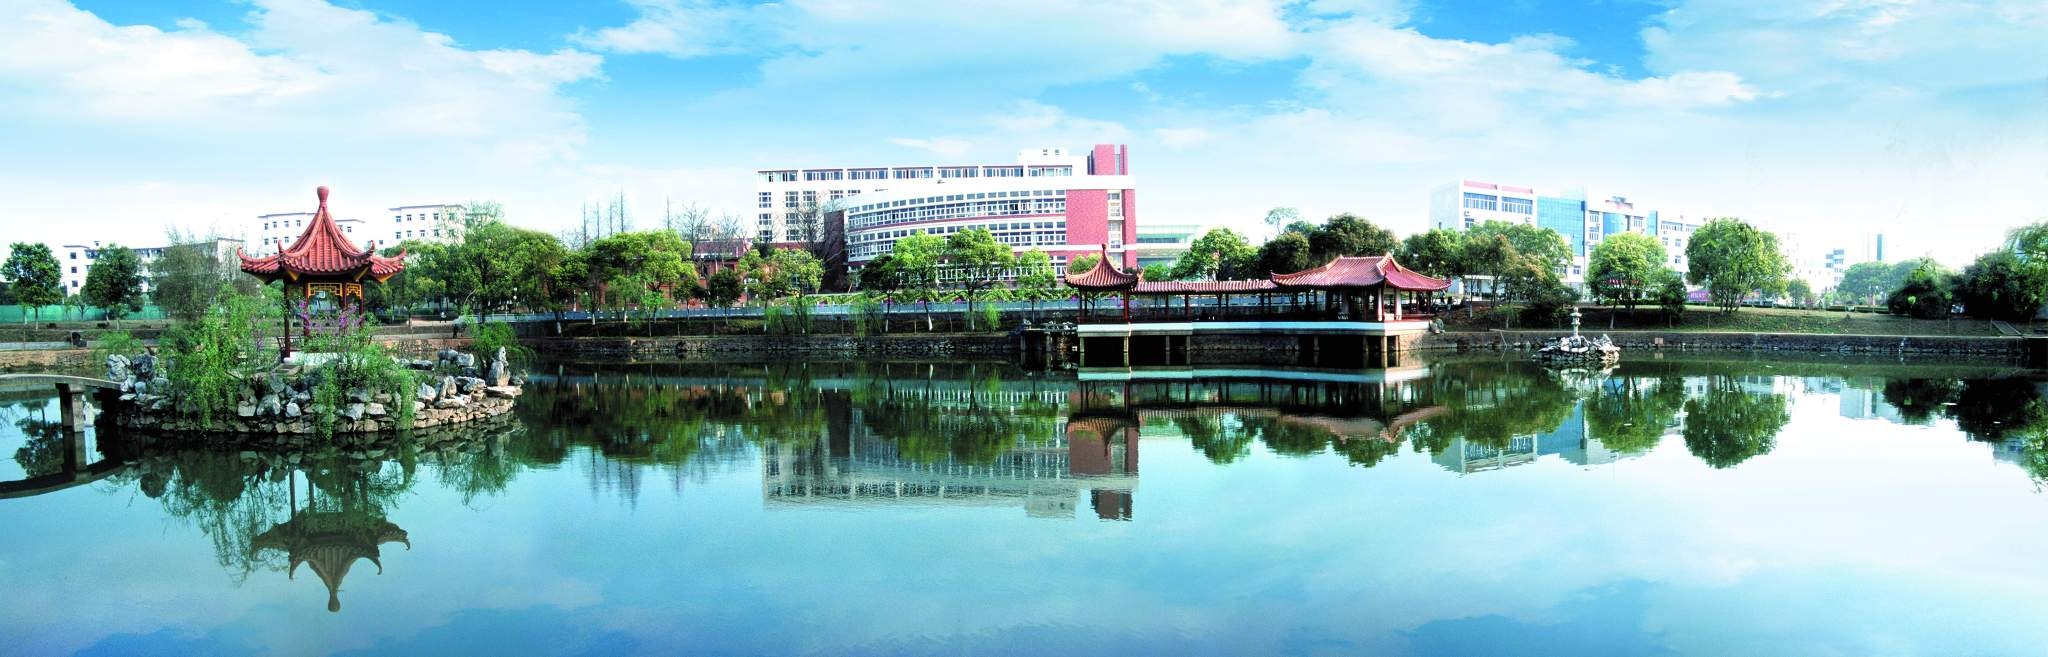 1987年升格为南昌职业技术师范学院,2002年更名为江西科技师范学院